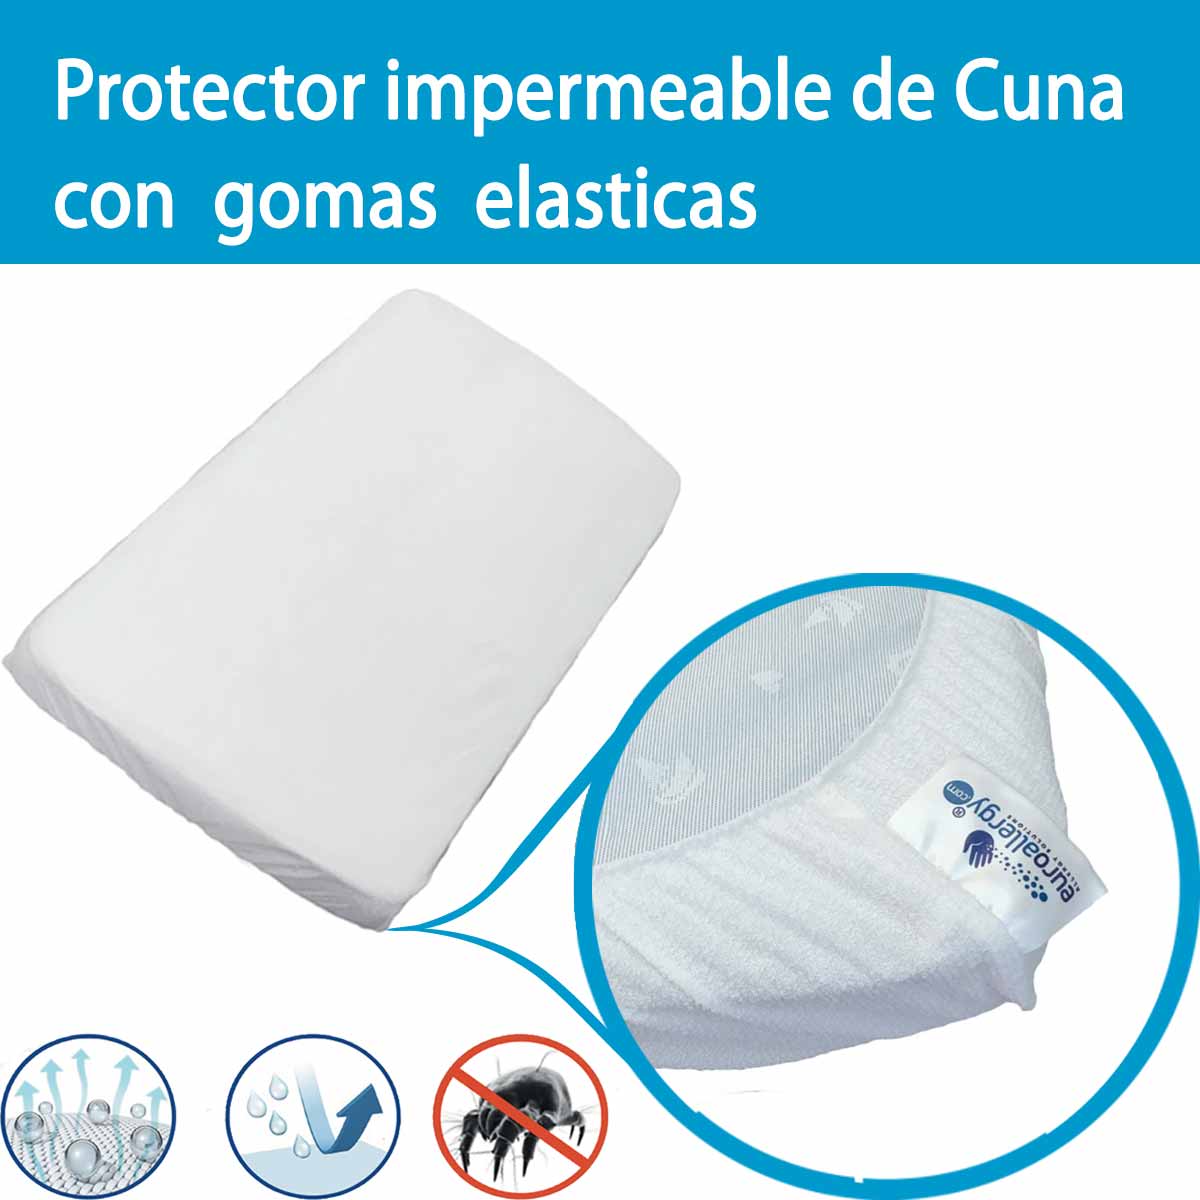 Protector Impermeable Transpirable para Colchón de Cuna